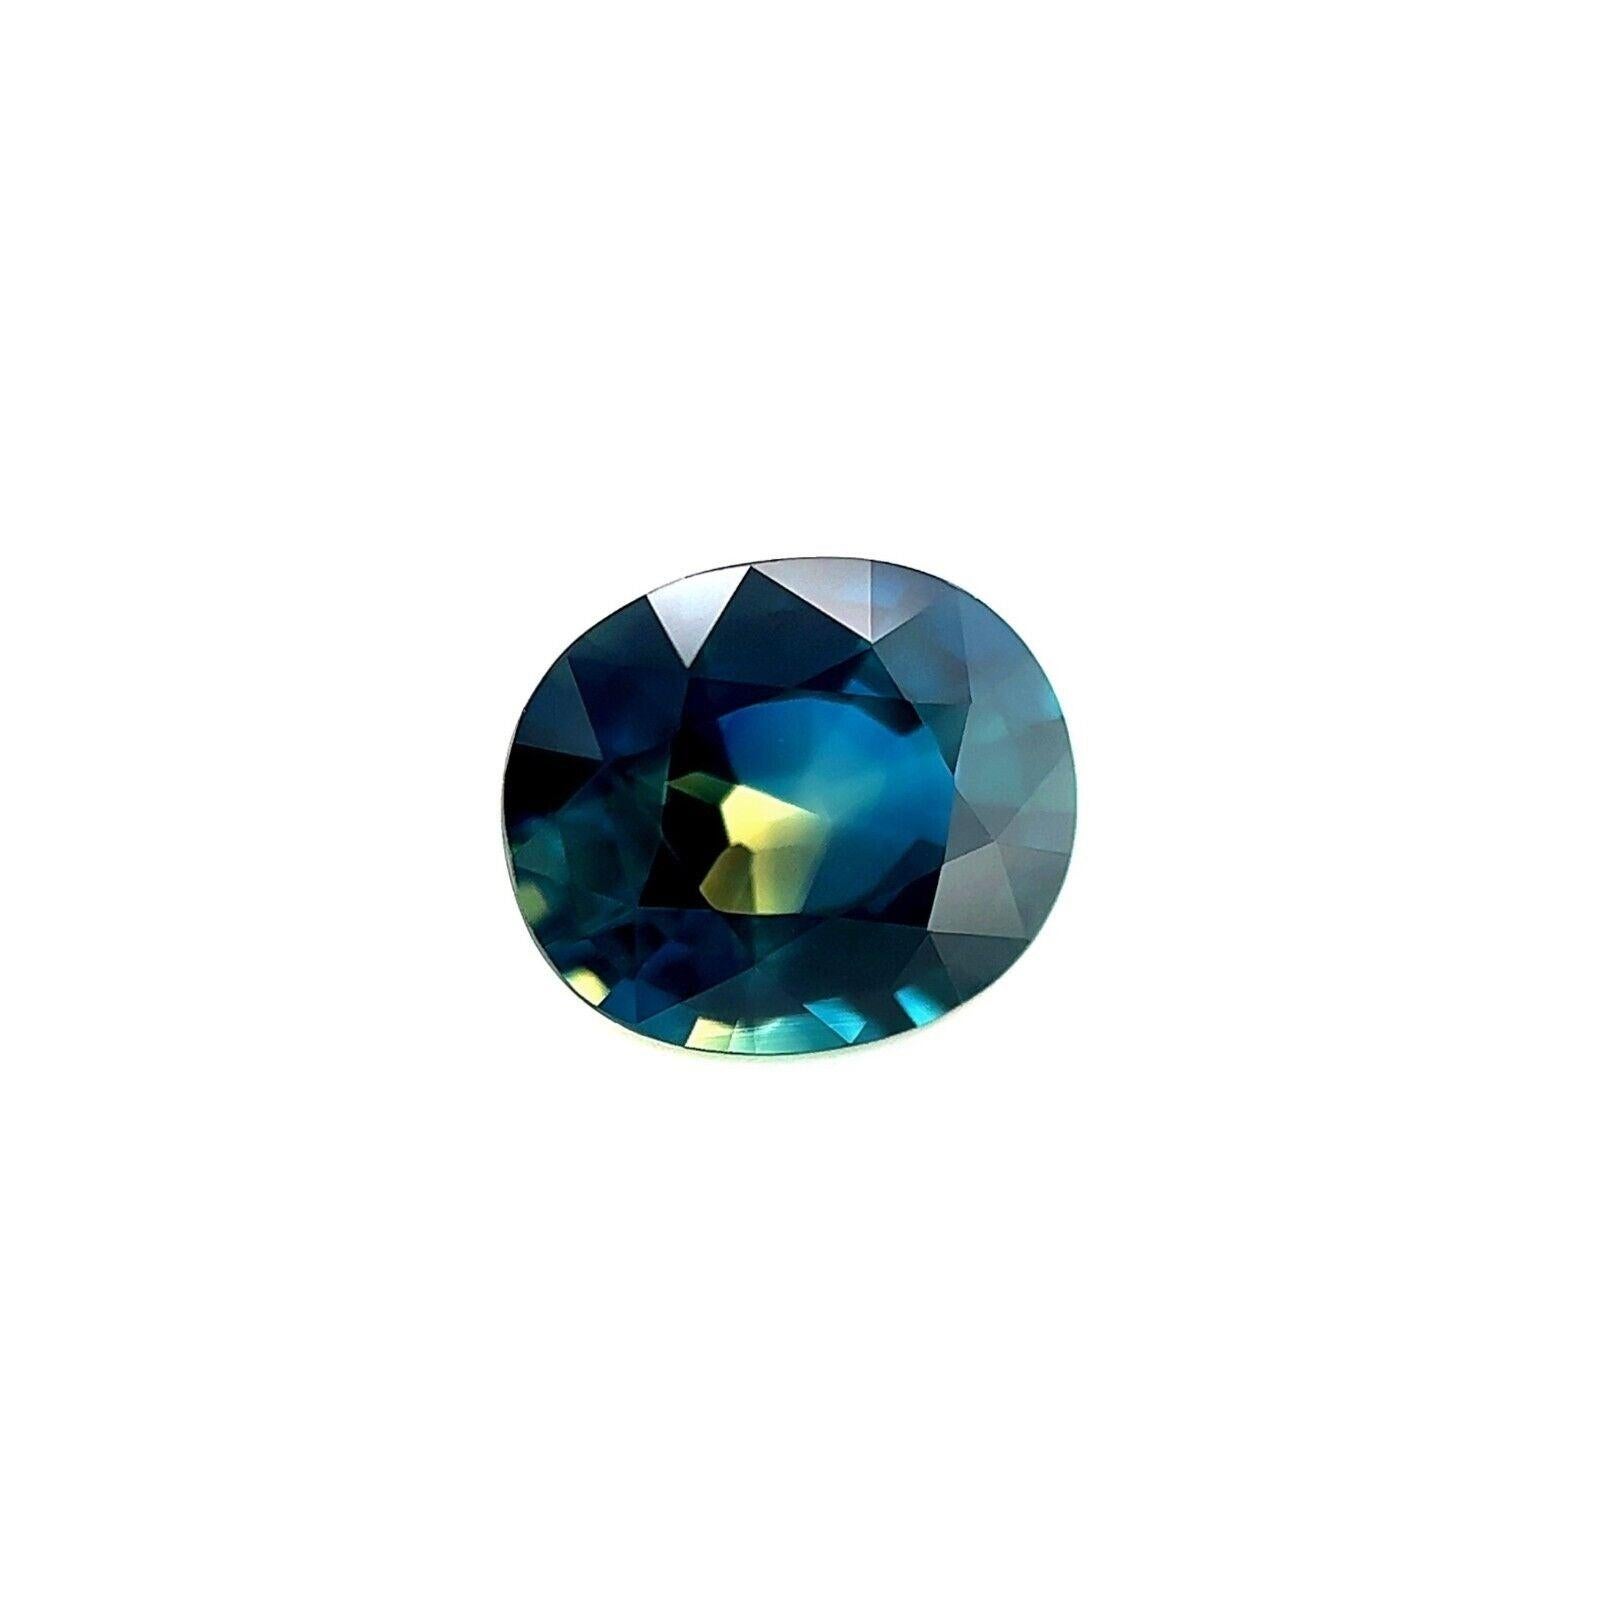 Saphir bicolore unique certifié GIA de 1,34 carat, taille ovale et bleu jaune, non traité

Saphir bicolore naturel unique certifié par la GIA et non traité.
Saphir non chauffé de 1,34 carat avec un effet bicolore bleu-jaune unique.
Entièrement